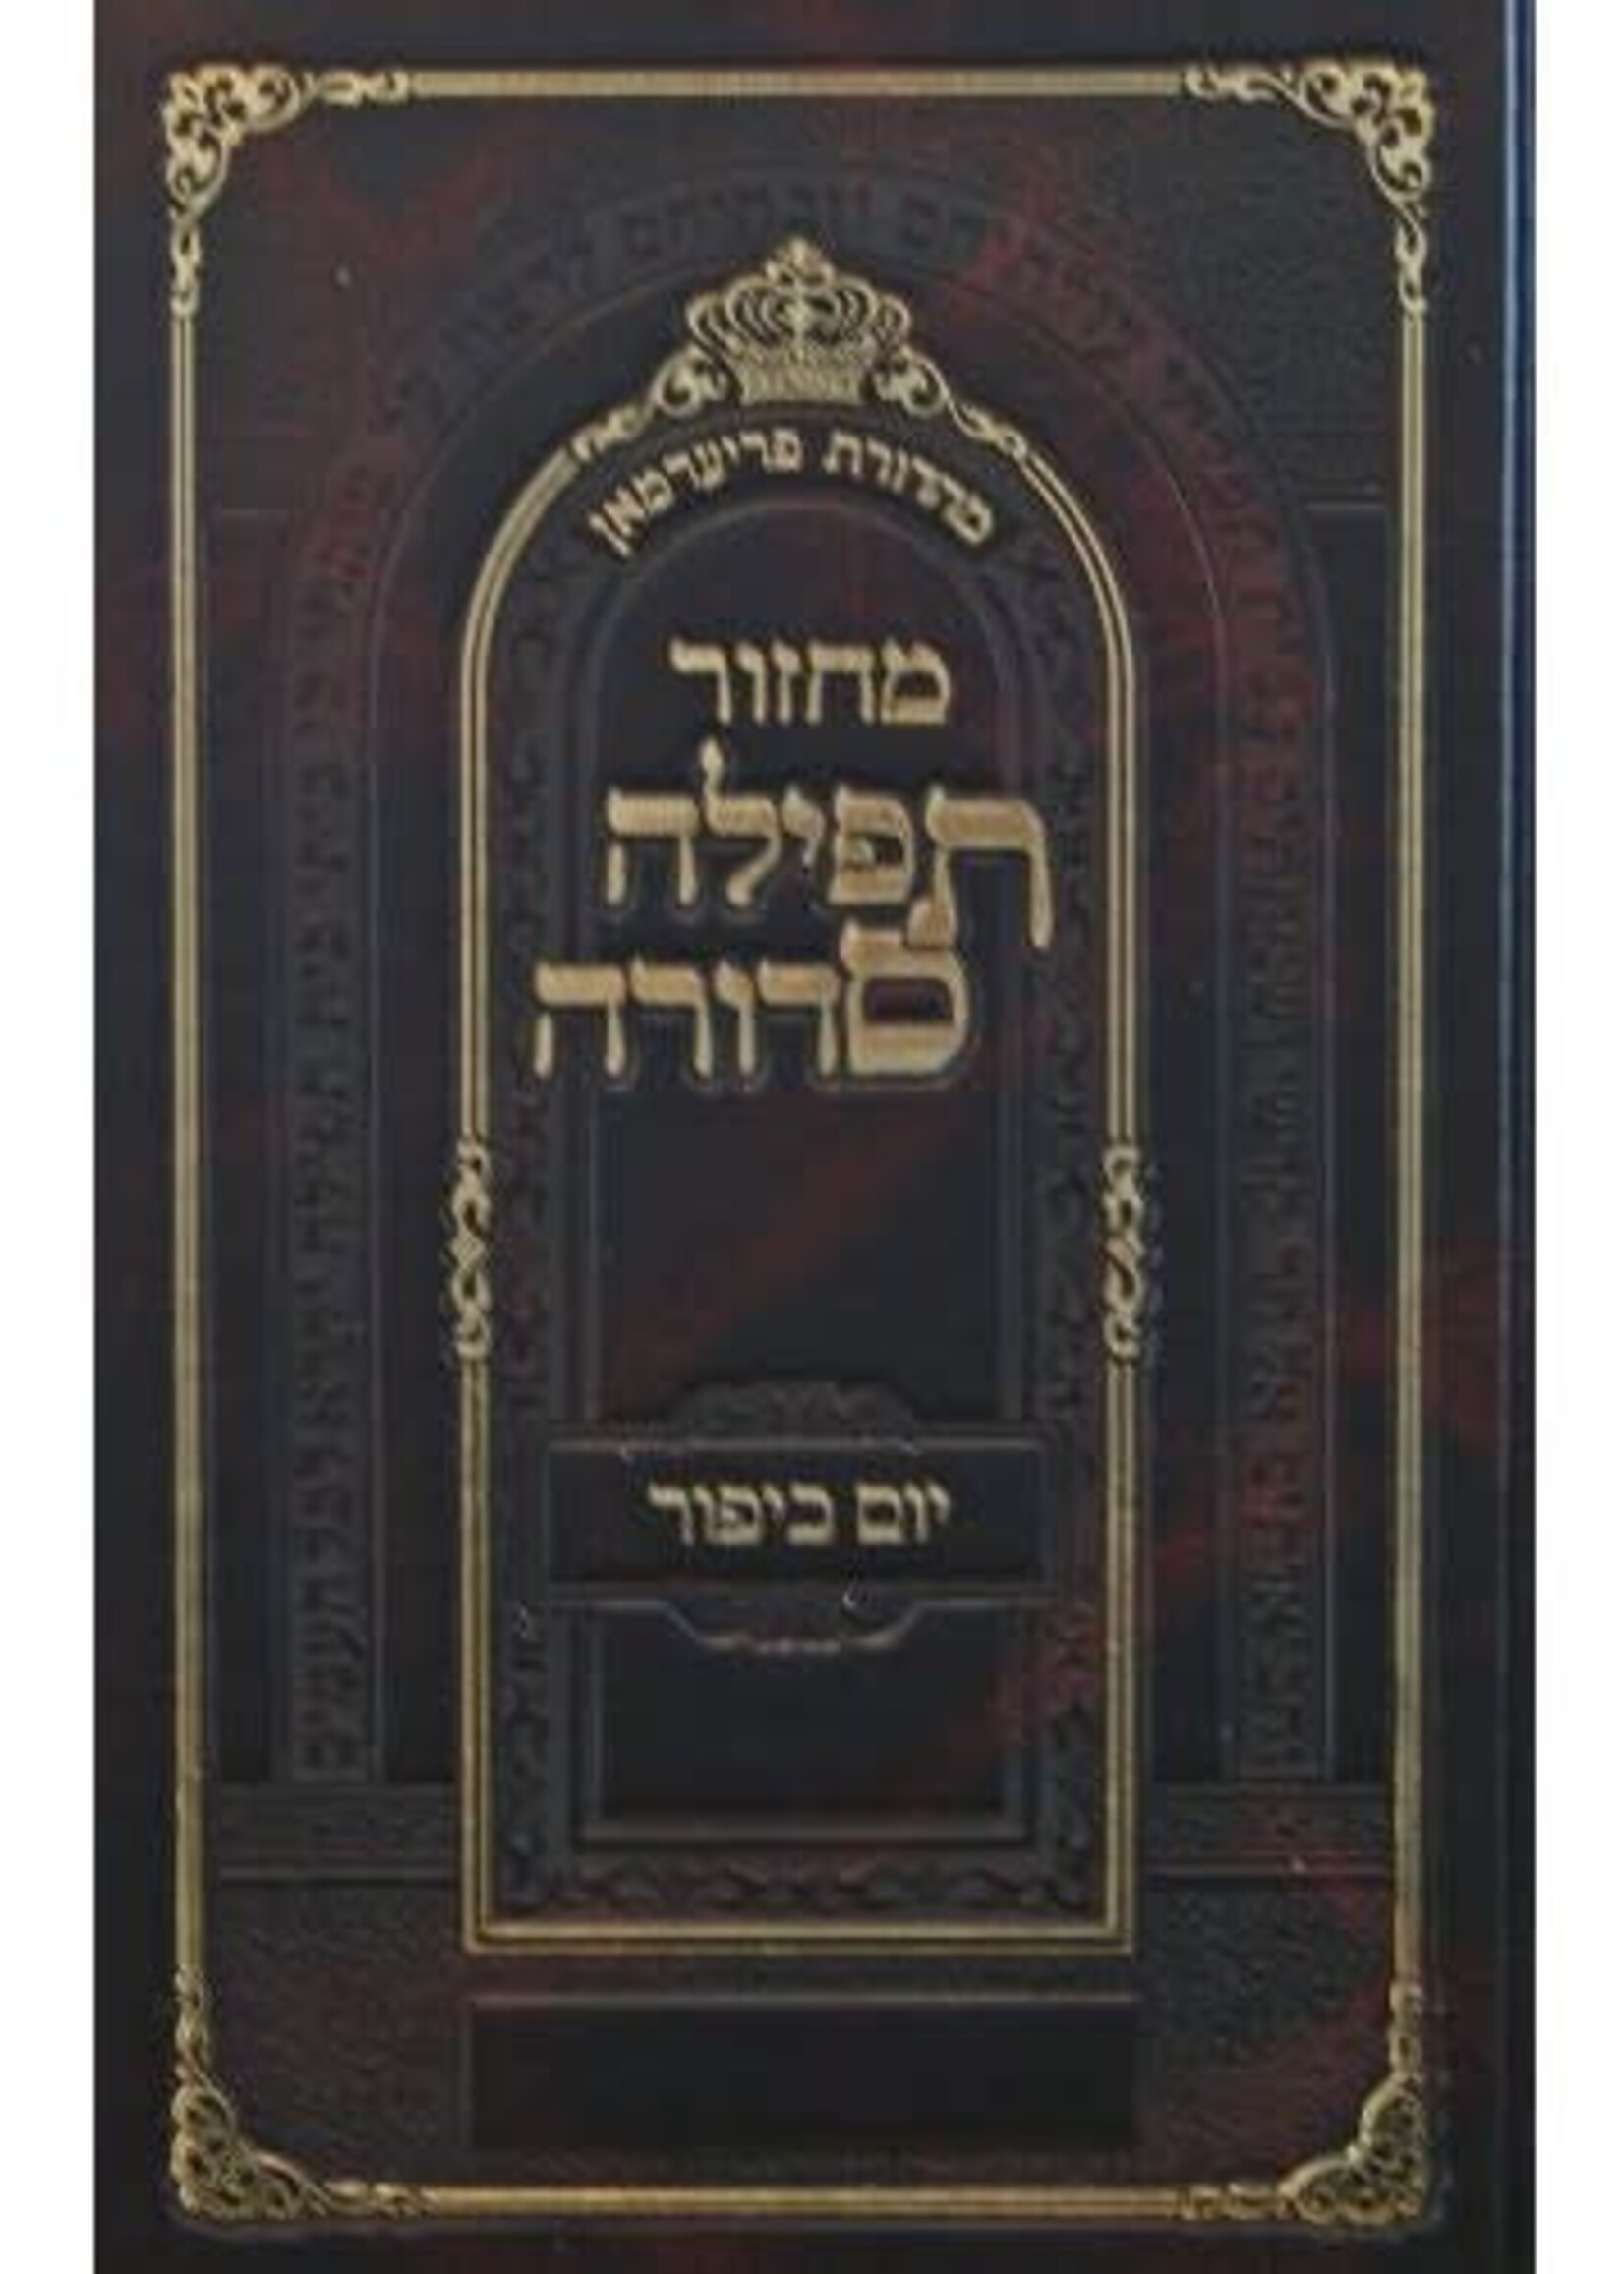 Machzor Tefillah Sedurah Yom Kippur Large Type (Shliach Tzibbur) Nusach Sefard /  מחזור תפילה סדורה יום כיפור עם הוראות באידיש